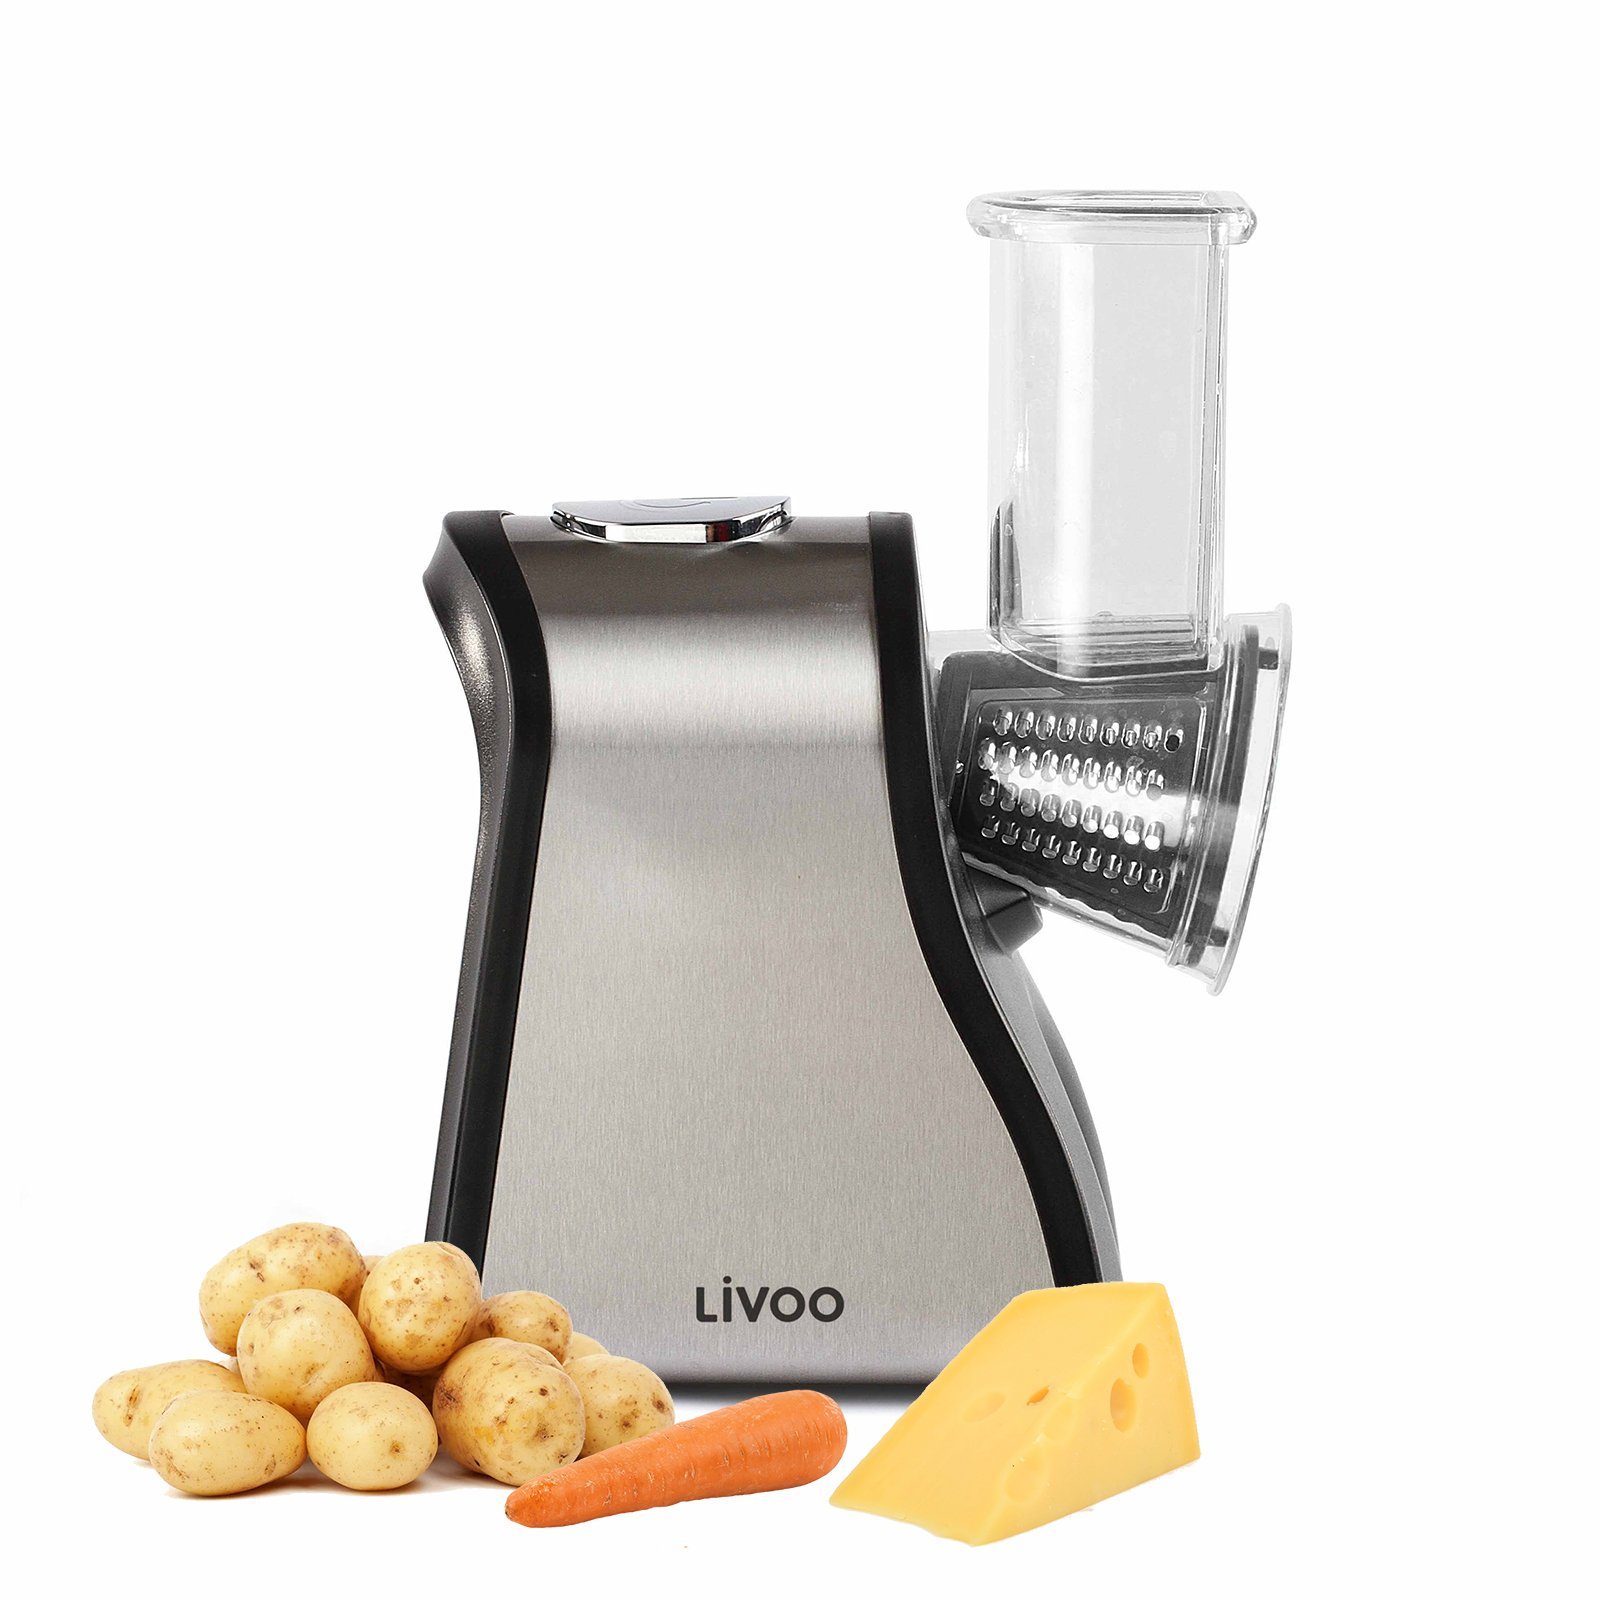 LIVOO Multifunktionsreibe LIVOO 200 Küchenmaschine 4 Watt Küchenreibe Edelstahl Aufsätze